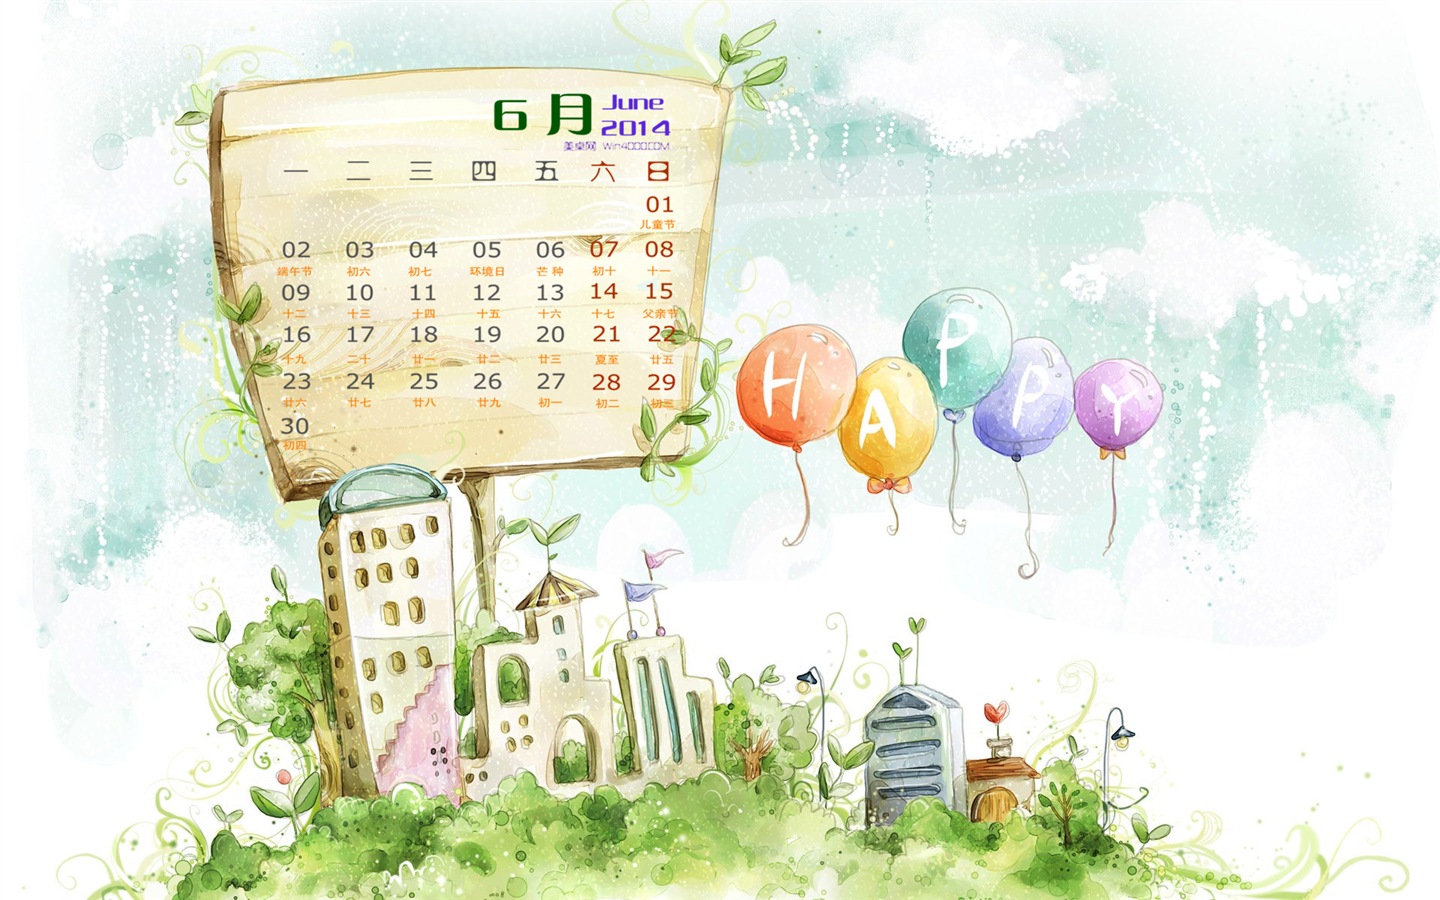 June 2014 calendar wallpaper (1) #11 - 1440x900